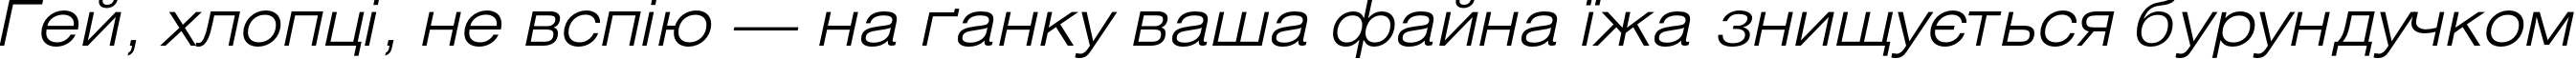 Пример написания шрифтом HeliosExtLight Italic текста на украинском